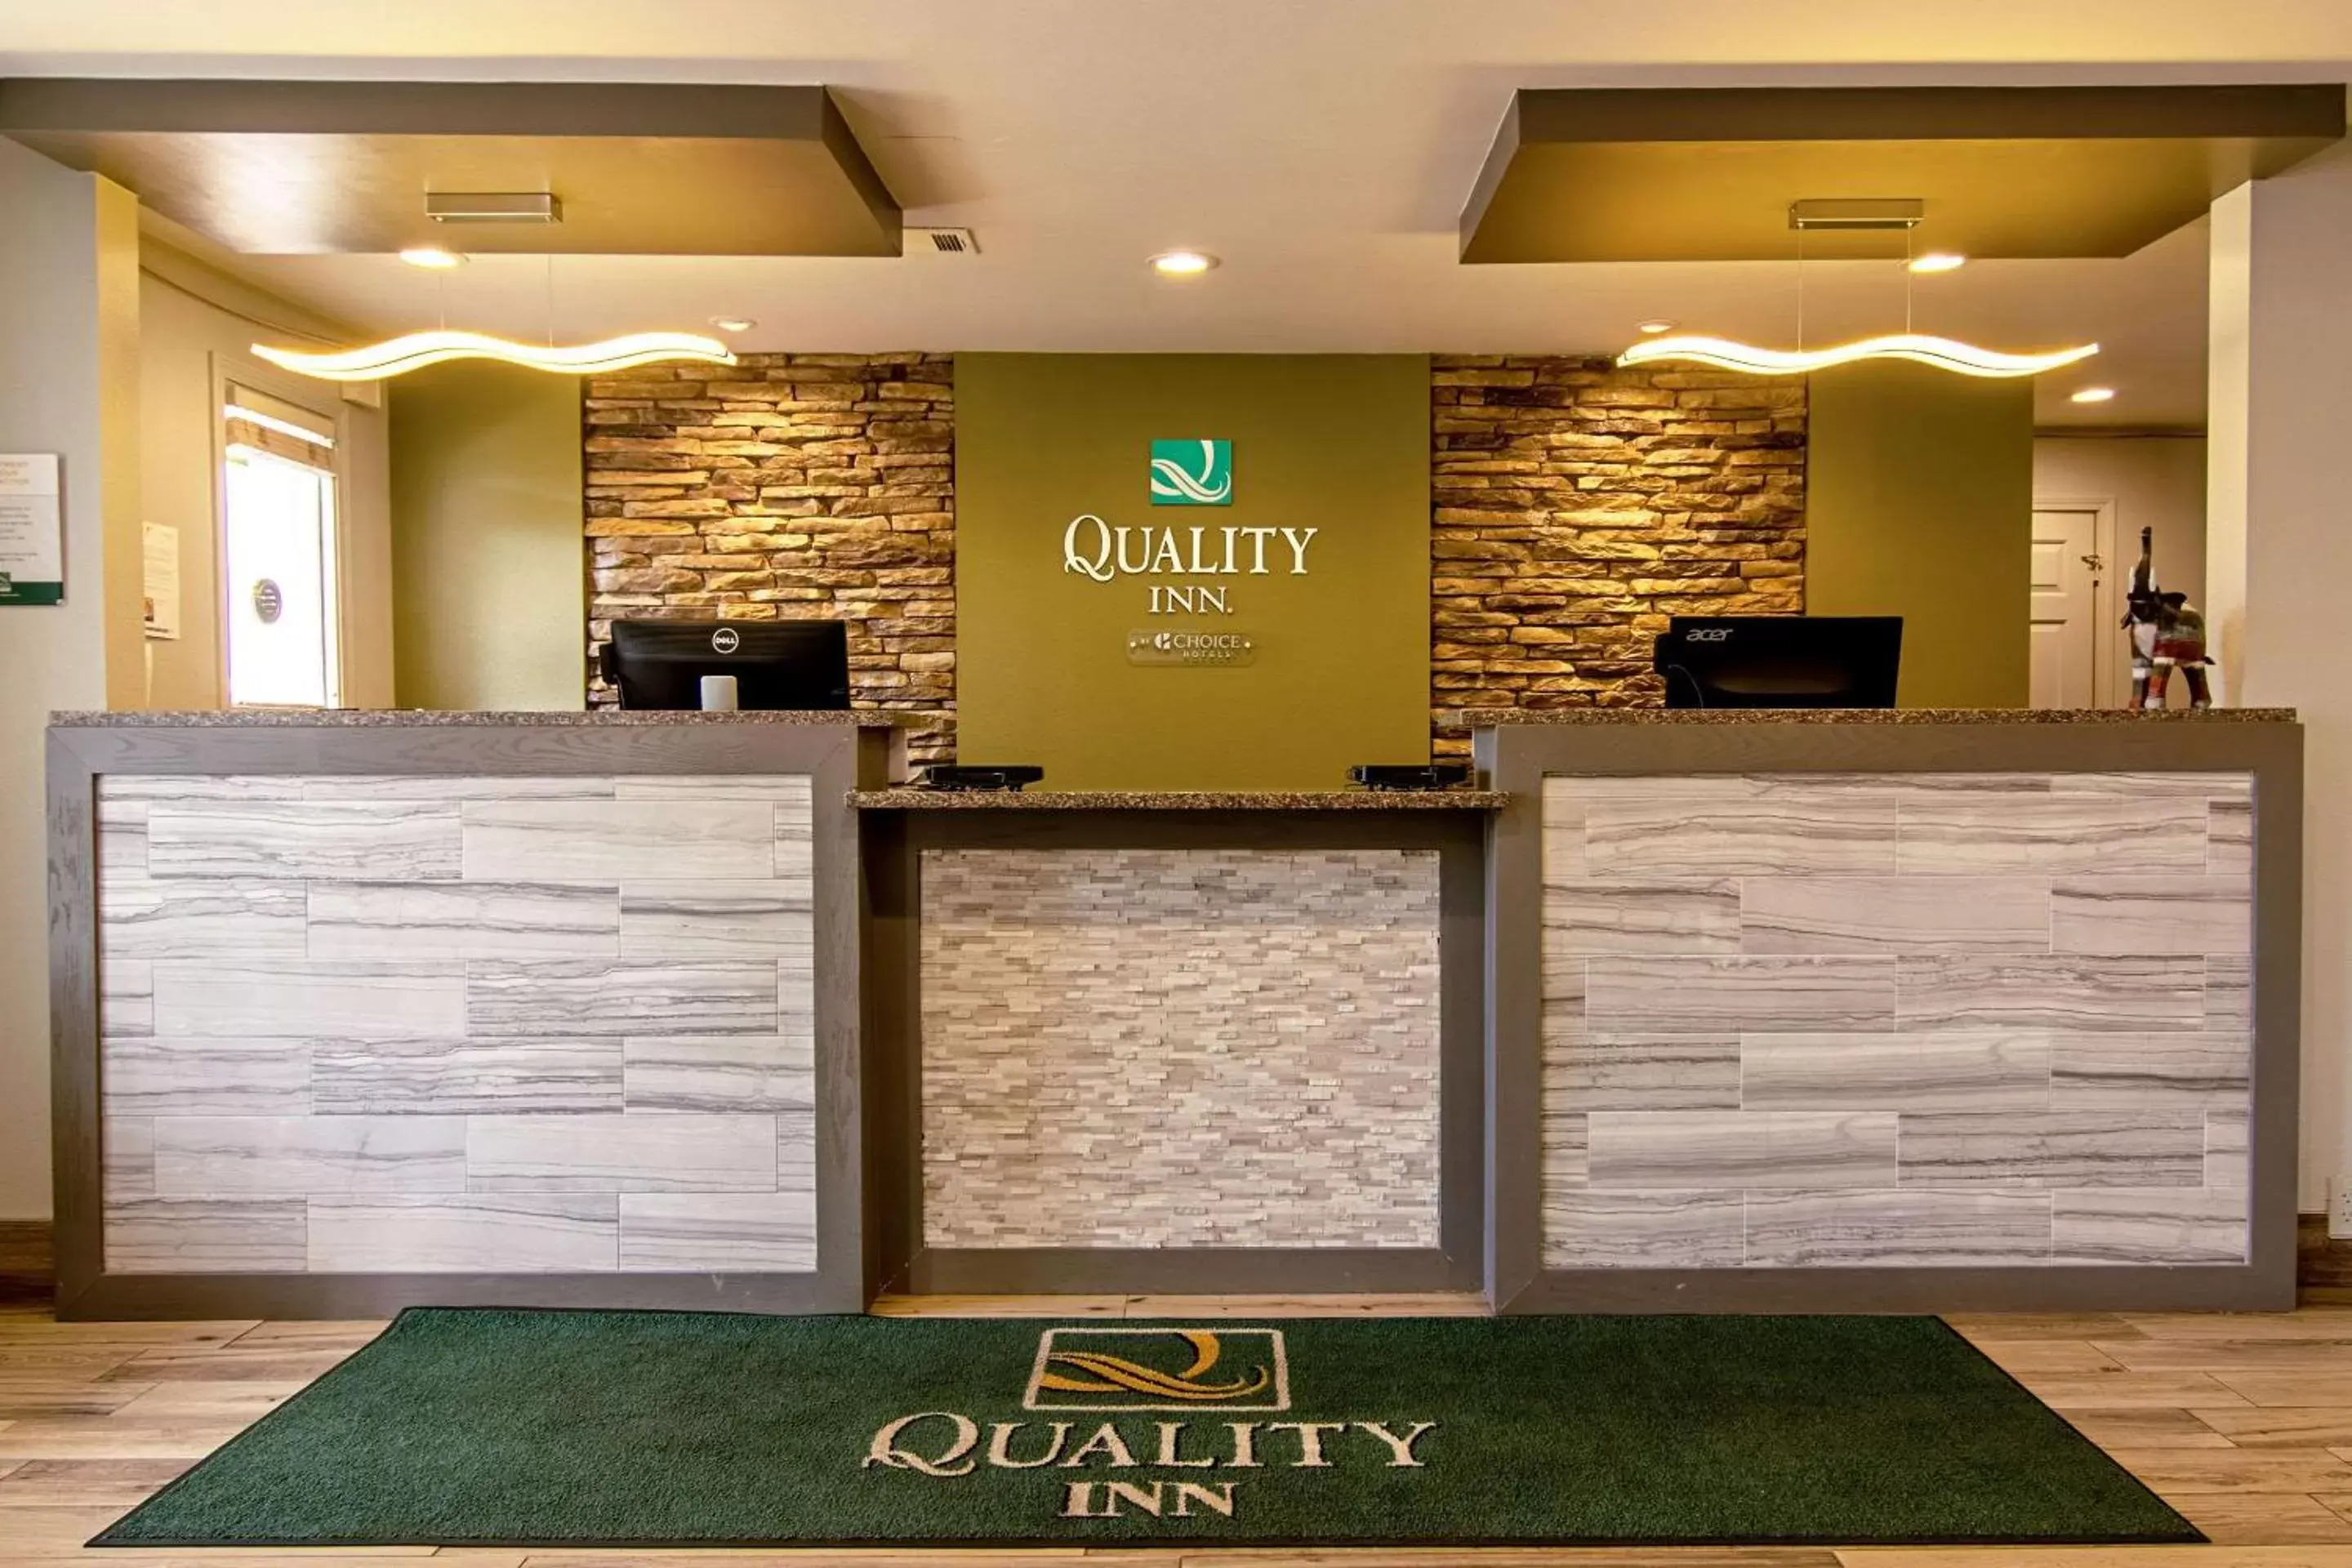 Lobby or reception, Lobby/Reception in Quality Inn Lagrange